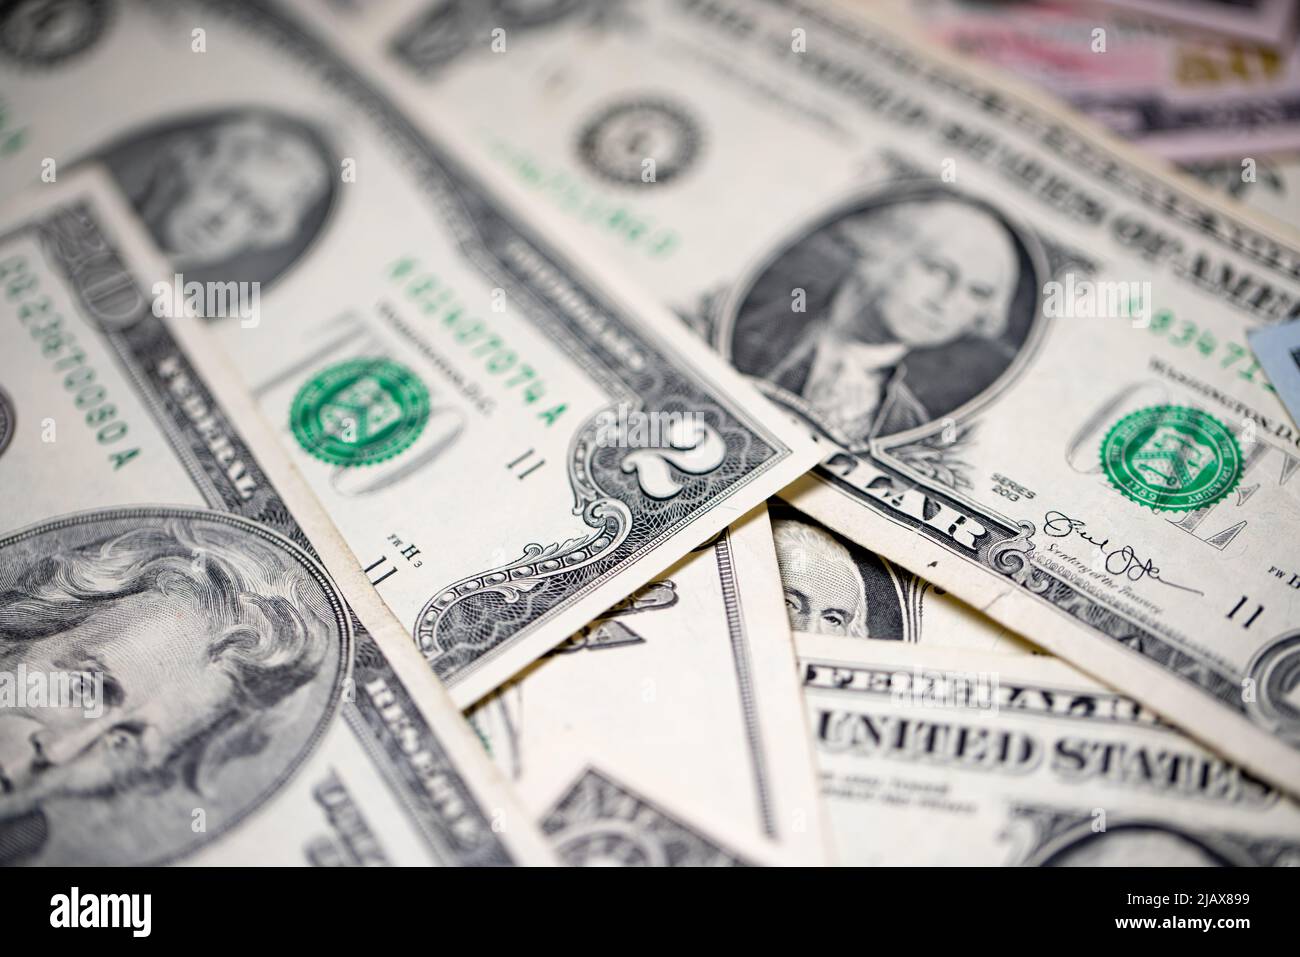 Verteilen Sie Banknoten, seltene zwei-Dollar-Banknoten neben einer US-Dollar-Banknote. Amerikanisches Geld und Bargeld Stockfoto